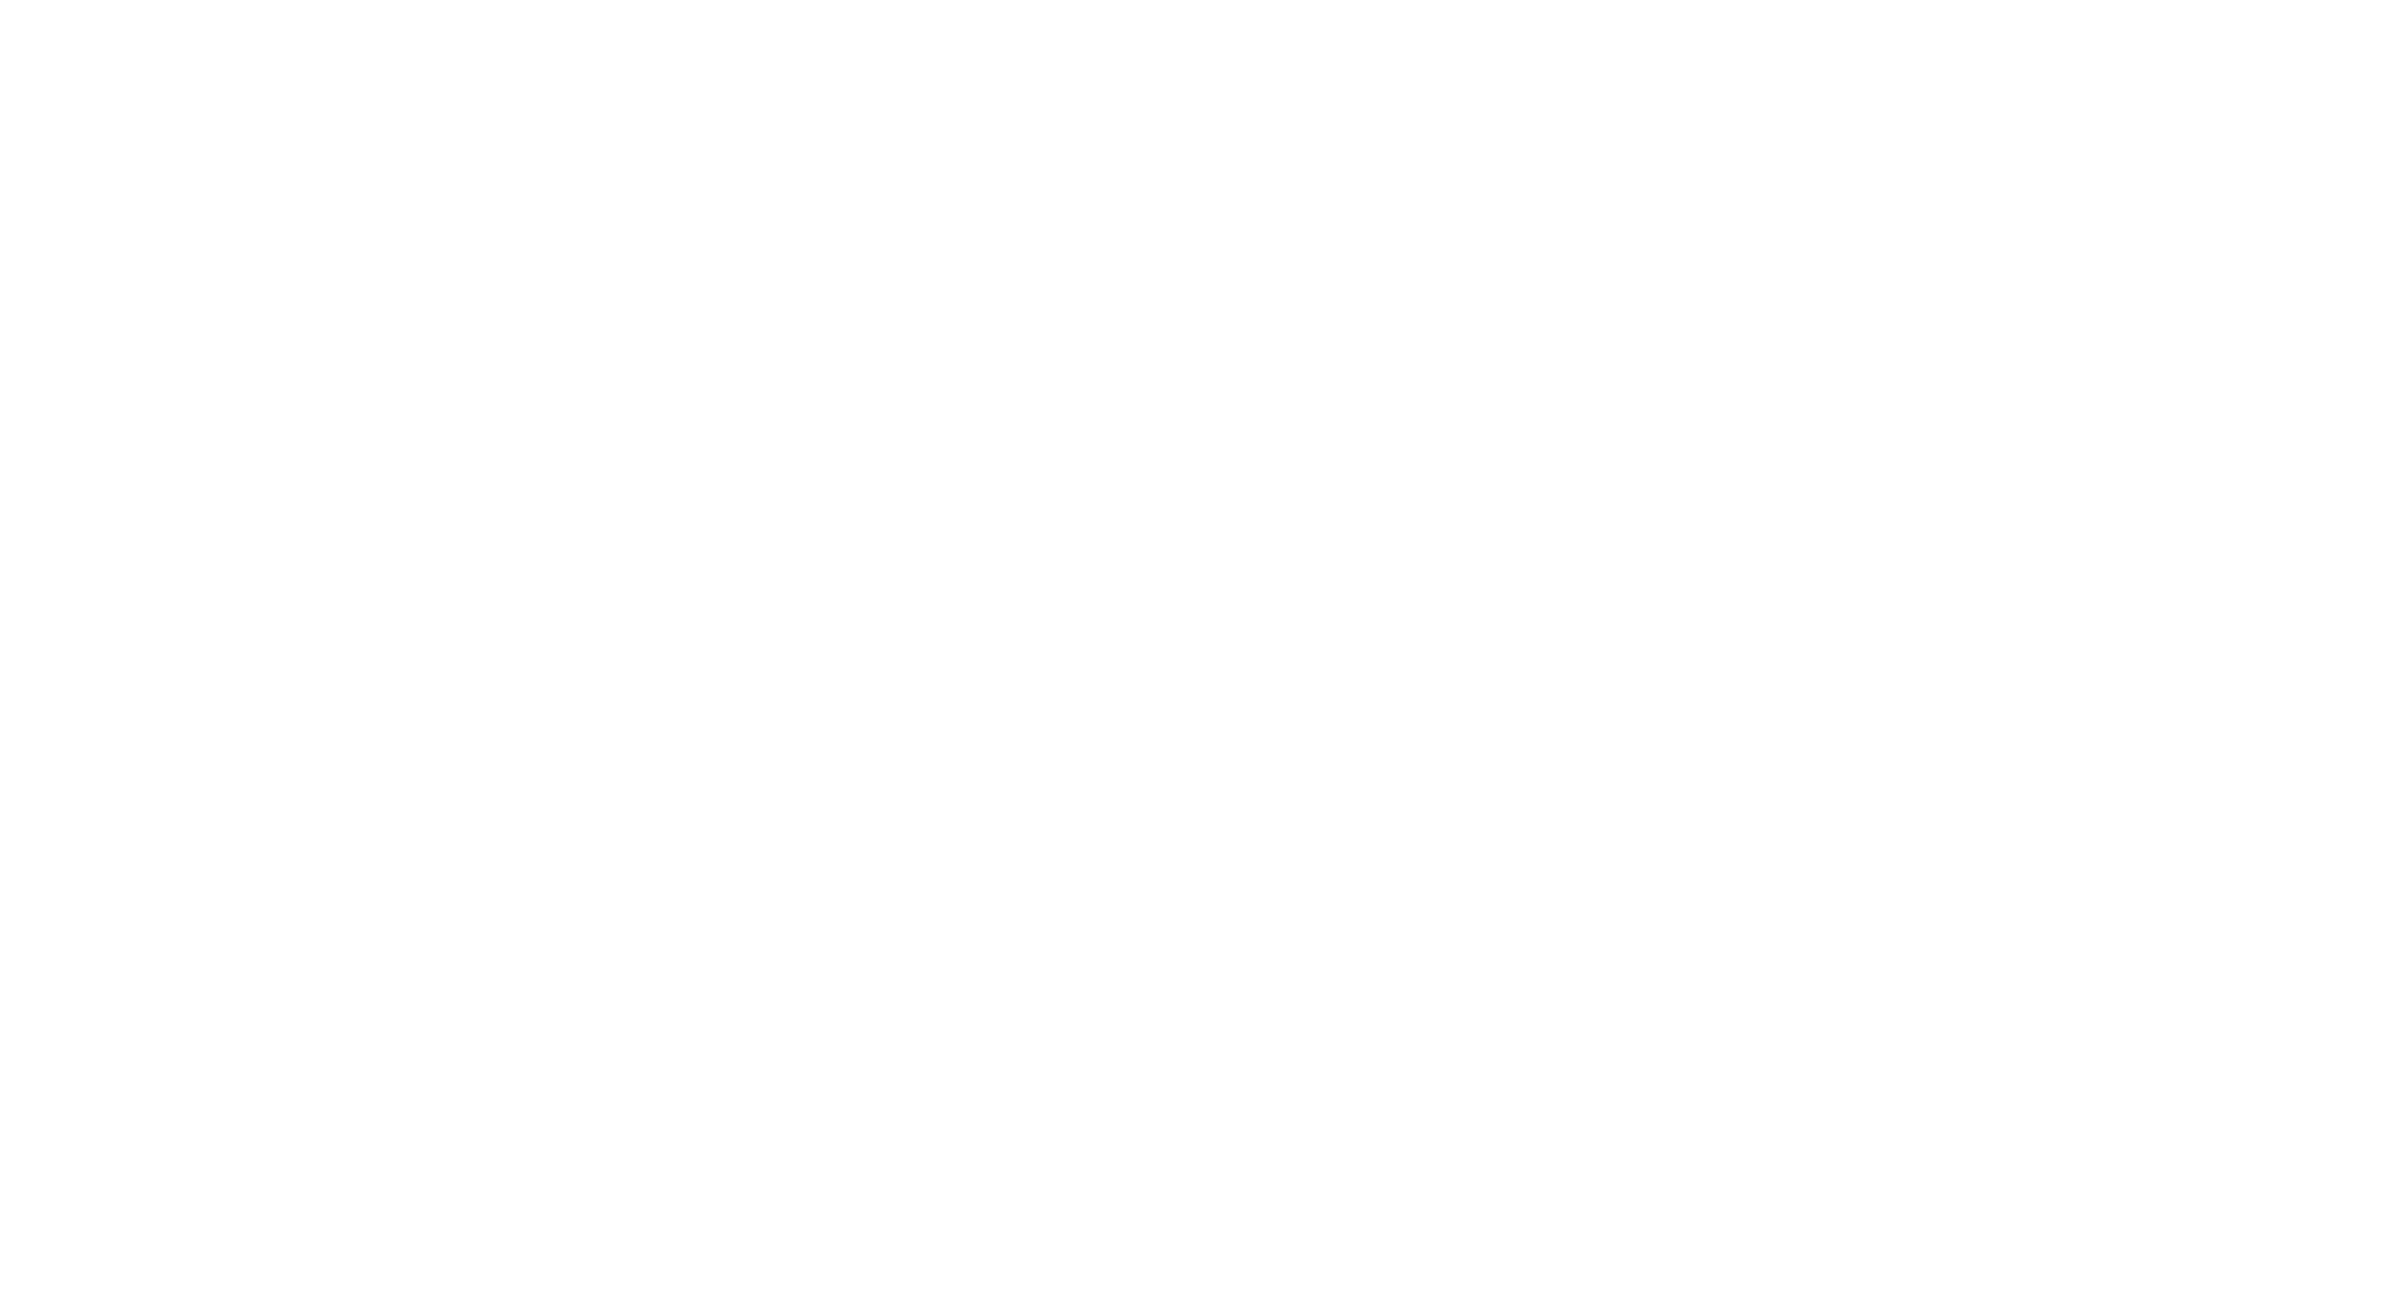 Gang Logo